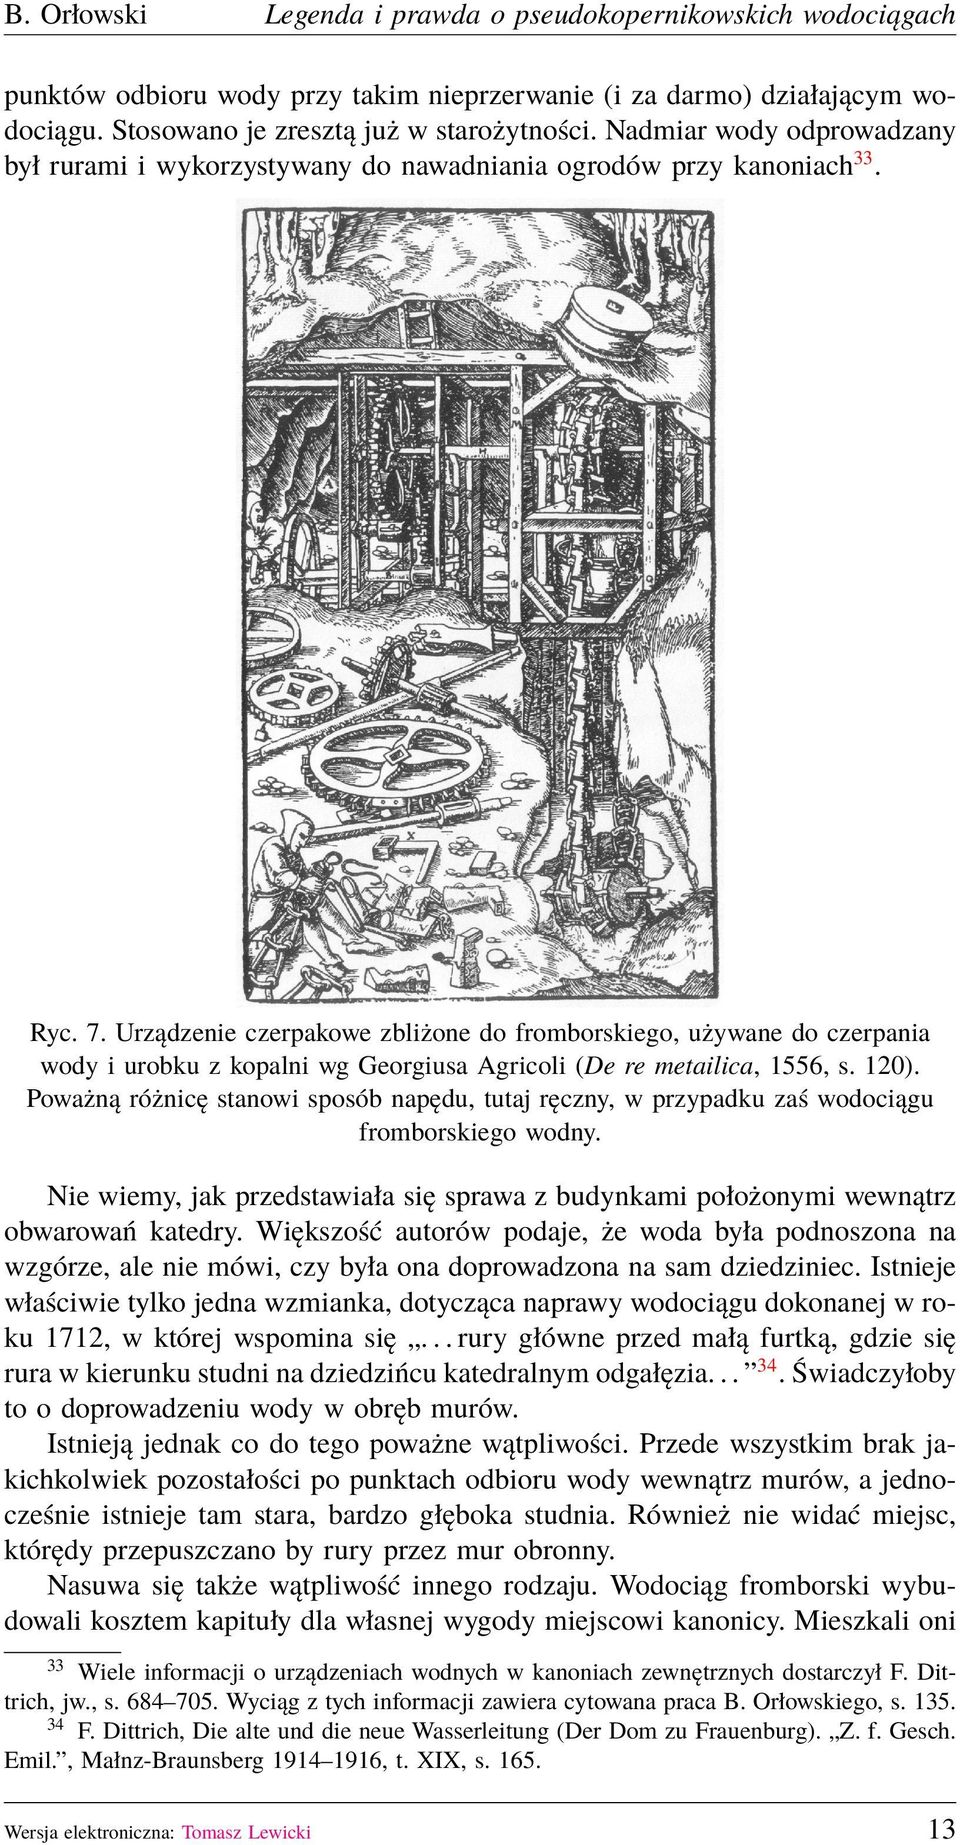 Urządzenie czerpakowe zbliżone do fromborskiego, używane do czerpania wody i urobku z kopalni wg Georgiusa Agricoli (De re metailica, 1556, s. 120).